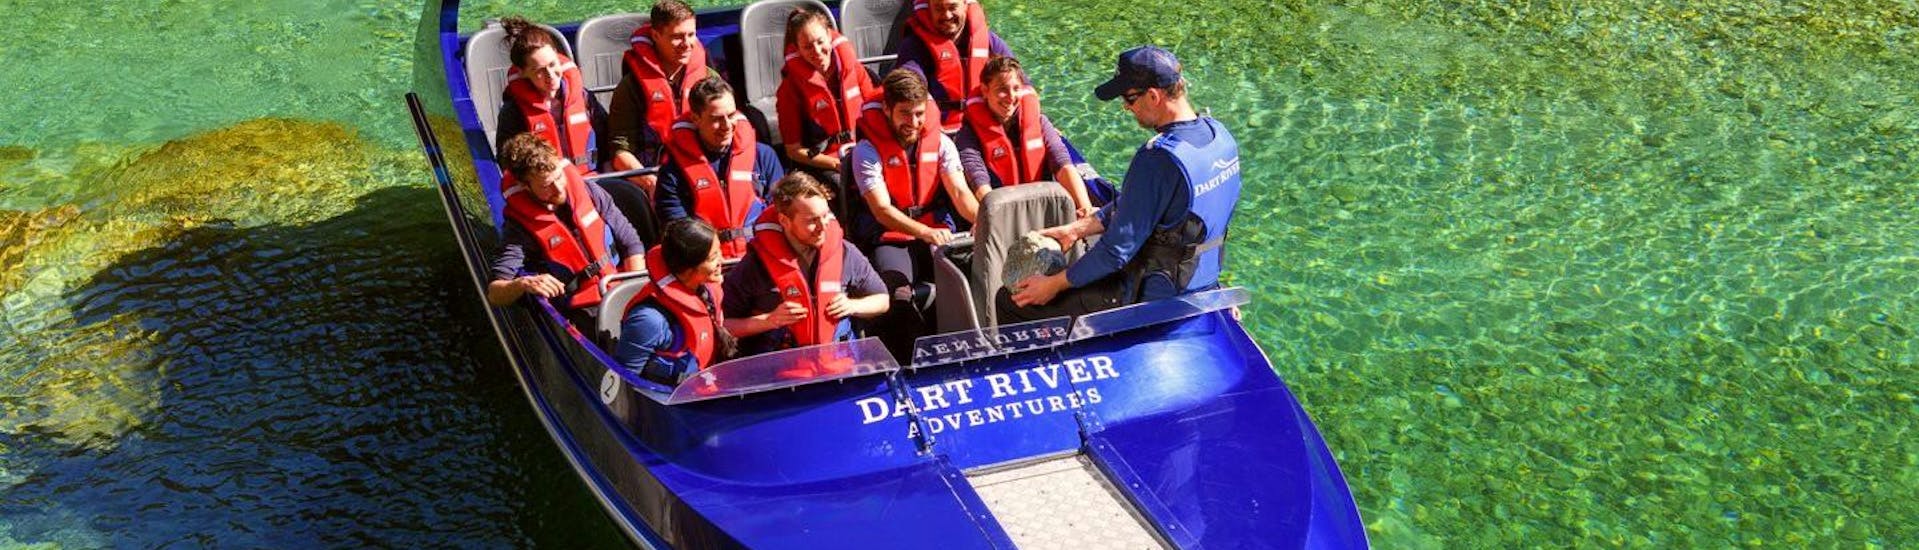 Jet Boat &amp; Kayak in Glenorchy - Queenstown Transfer with Dart River Adventures Queenstown - Hero image